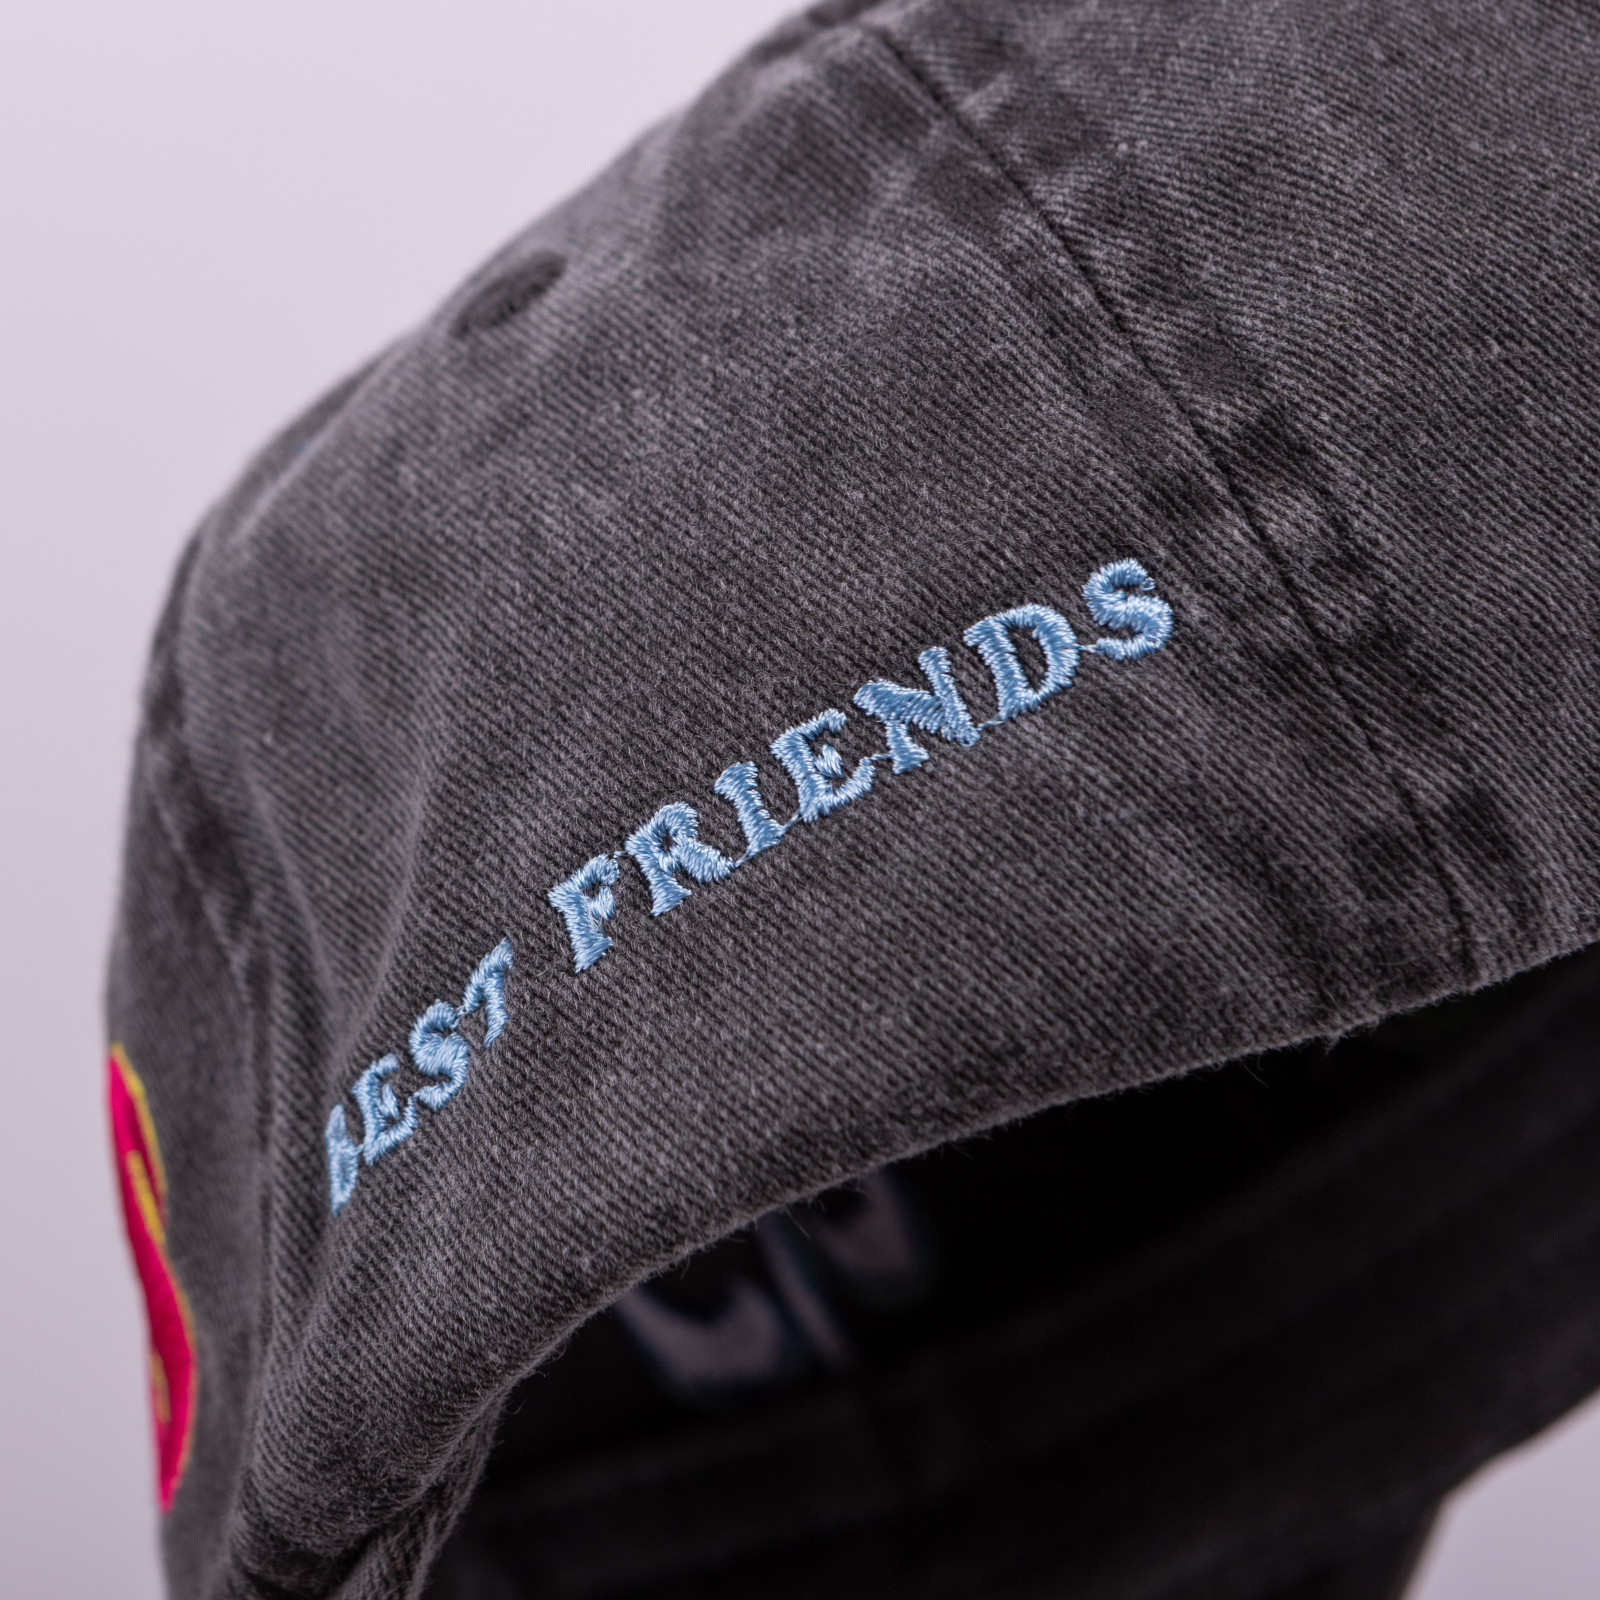 dalyb’s best friends cap, vintage black